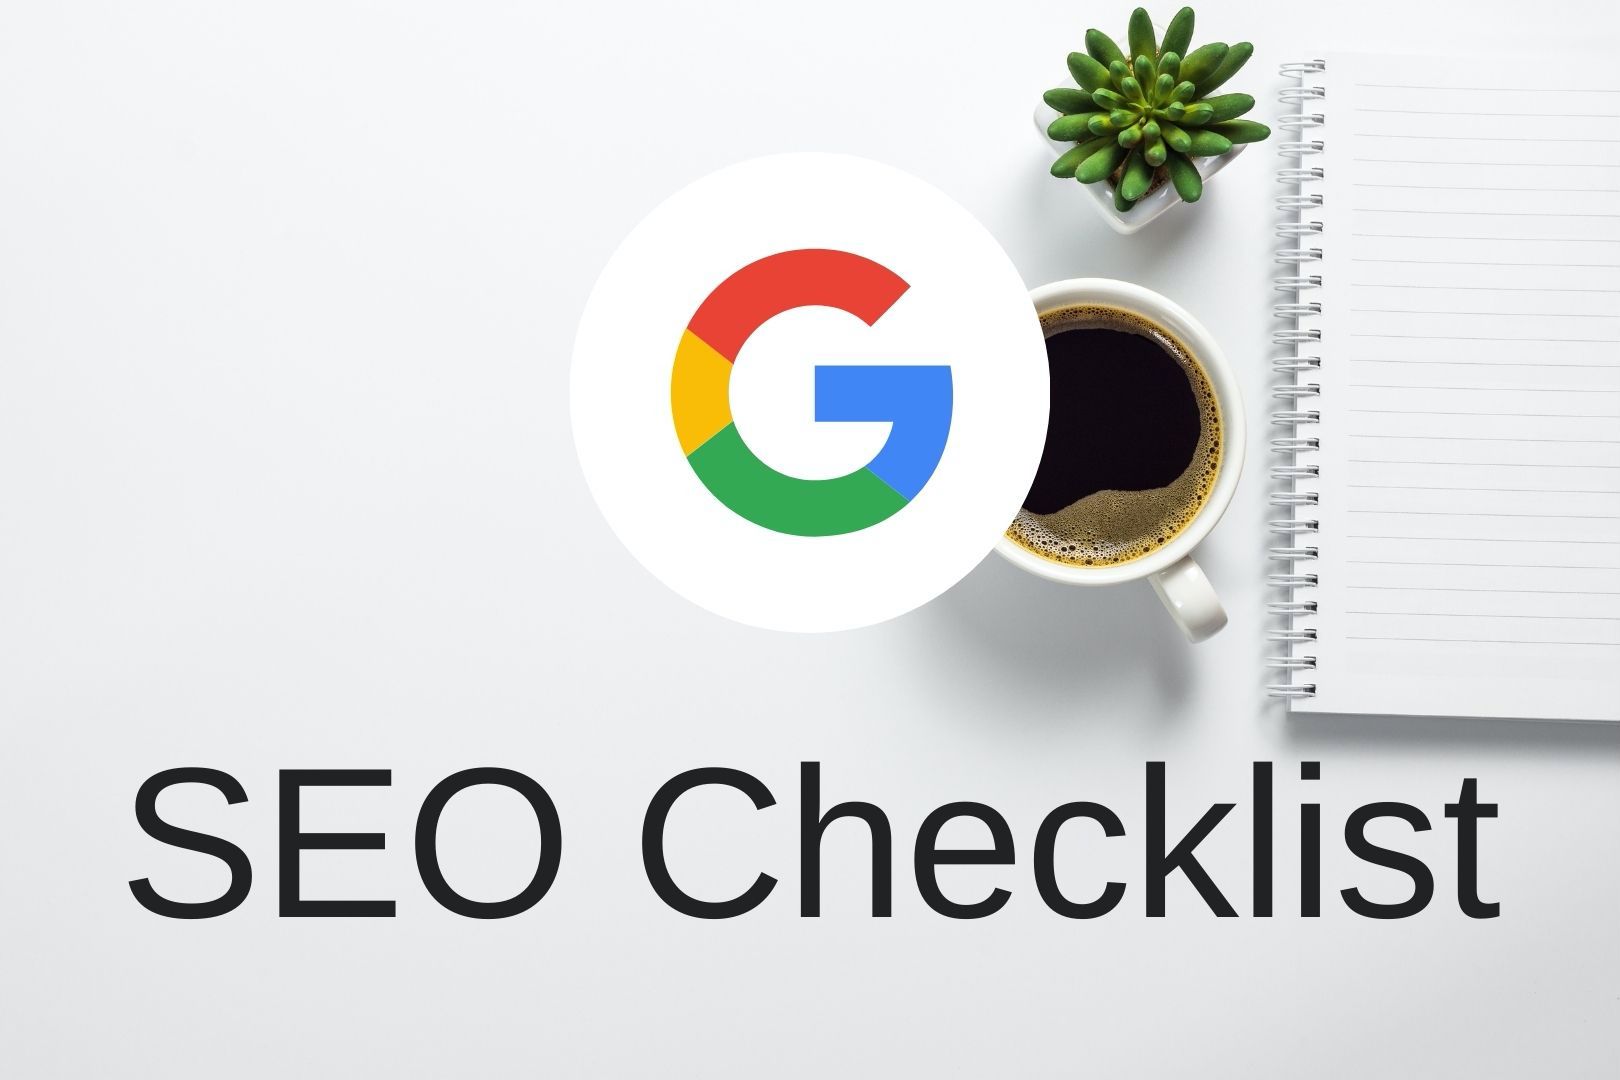 SEO checklist by Rankup